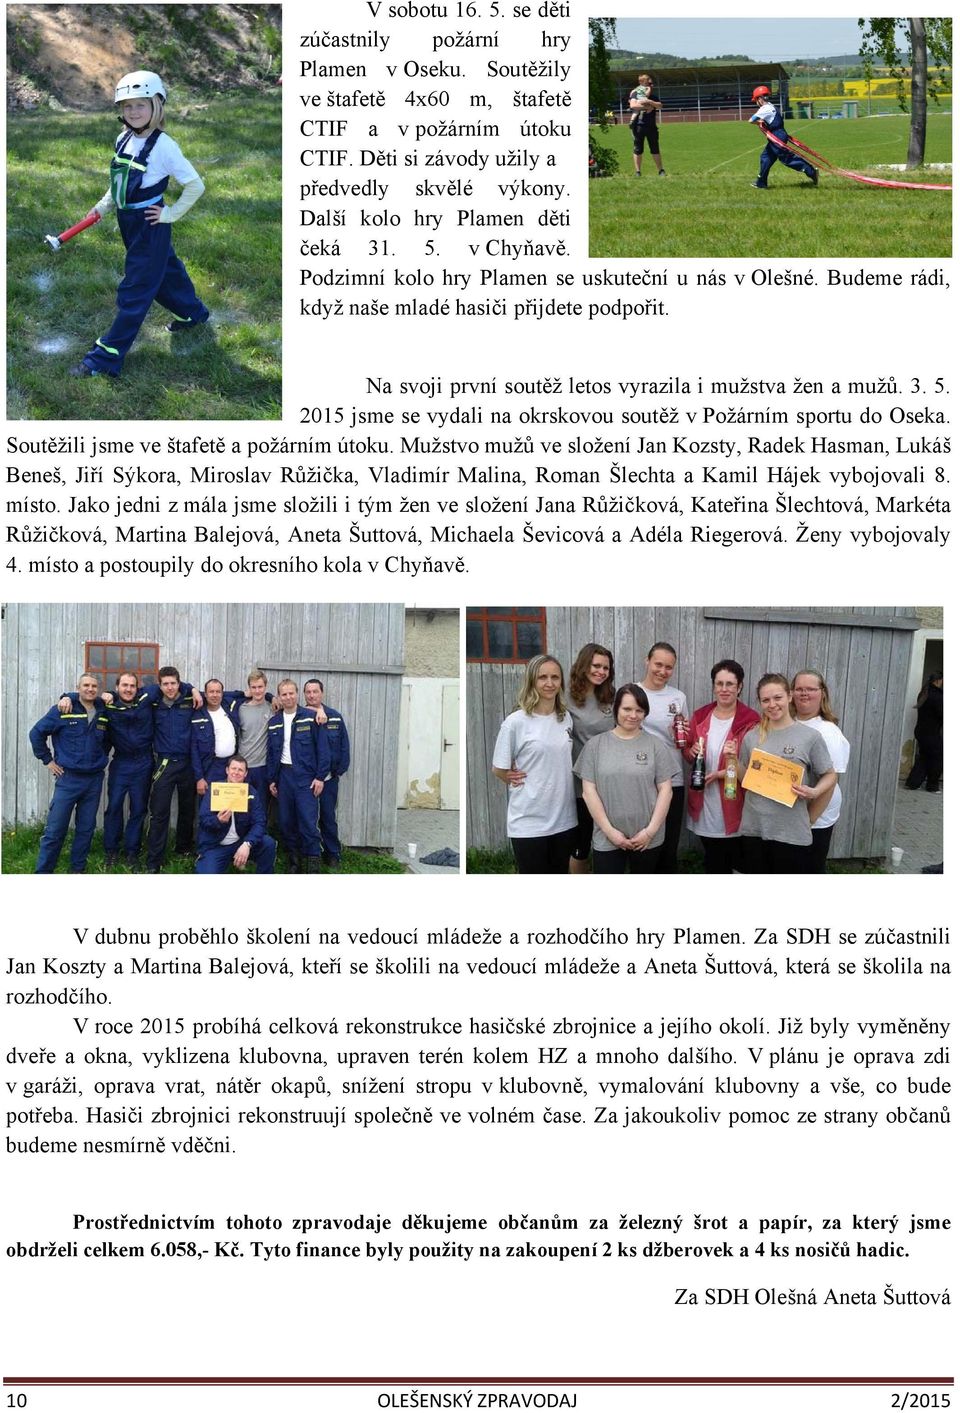 Na svoji první soutěž letos vyrazila i mužstva žen a mužů. 3. 5. 2015 jsme se vydali na okrskovou soutěž v Požárním sportu do Oseka. Soutěžili jsme ve štafetě a požárním útoku.